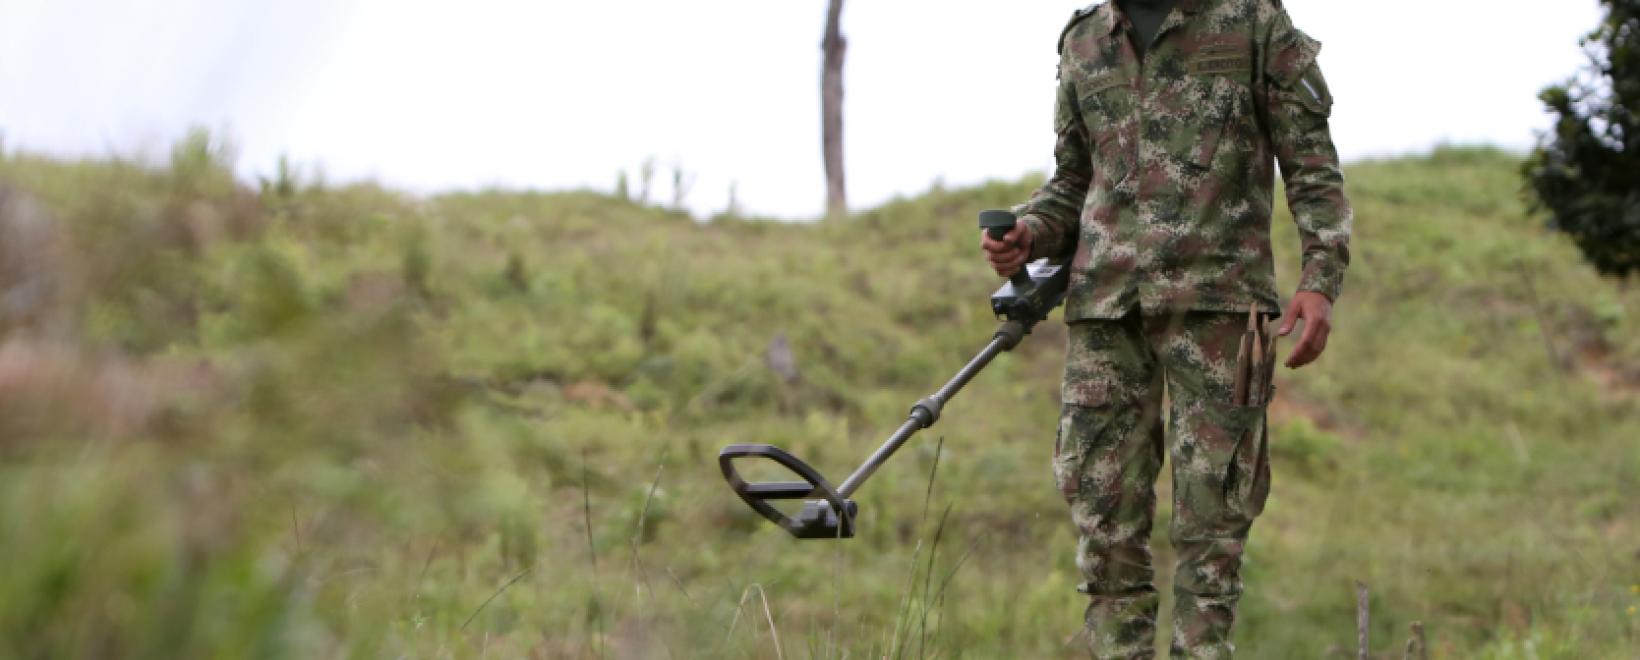  Vistahermosa el municipio con mayor riesgo por minas antipersona, señala el ejército